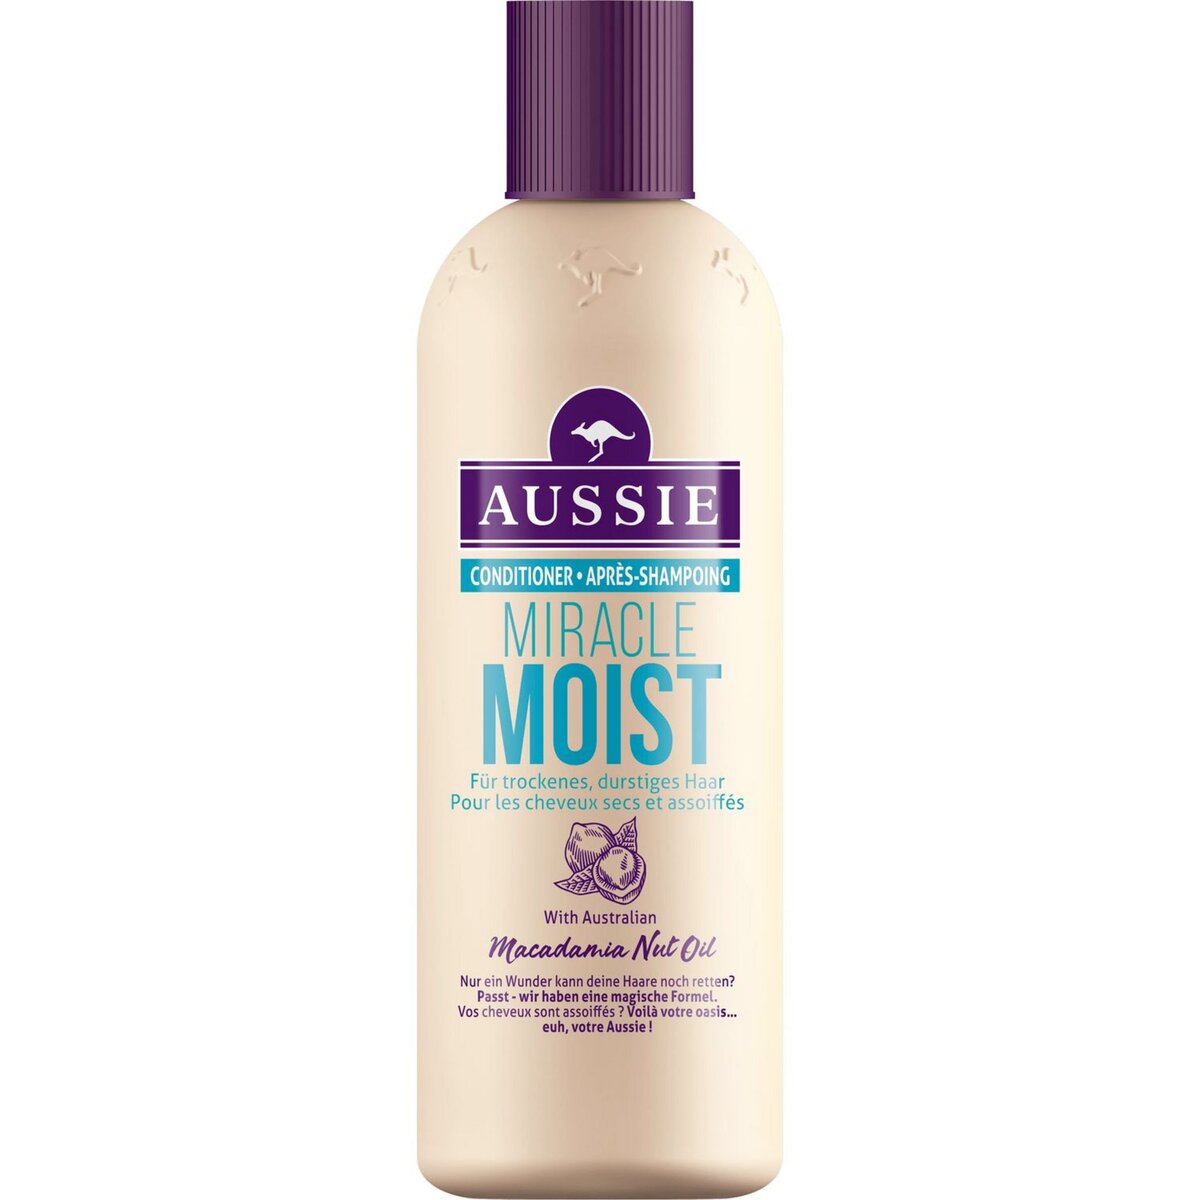 AUSSIE Après-shampooing miracle moist 250ml